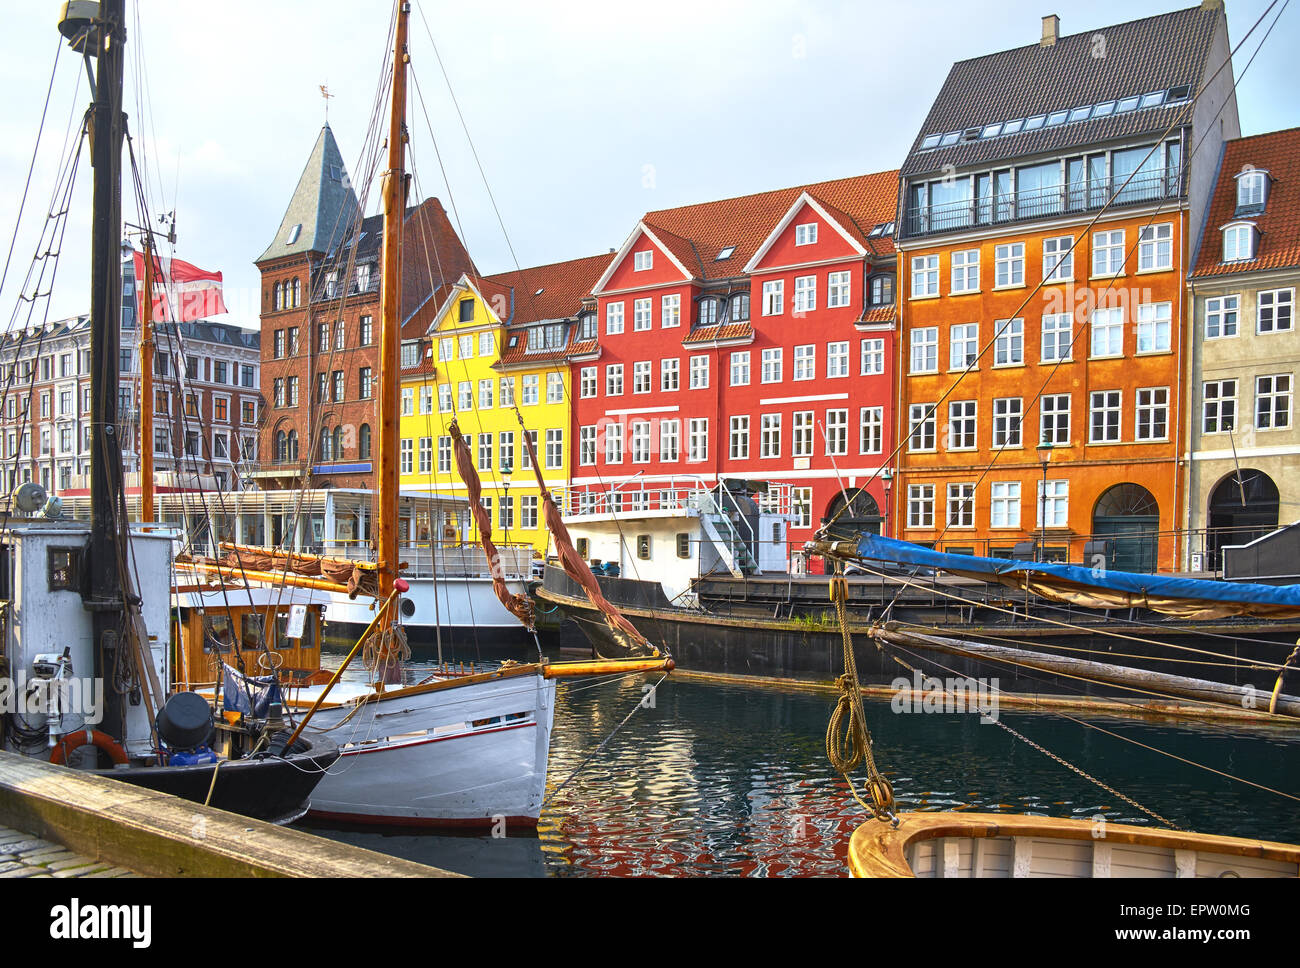 Die Boote und Schiffe in der ruhigen Hurbour von Nyhavn, Kopenhagen, Dänemark. Nyhavn (neue Hafen) ist Wasser, Kanal und unterhalten Stockfoto